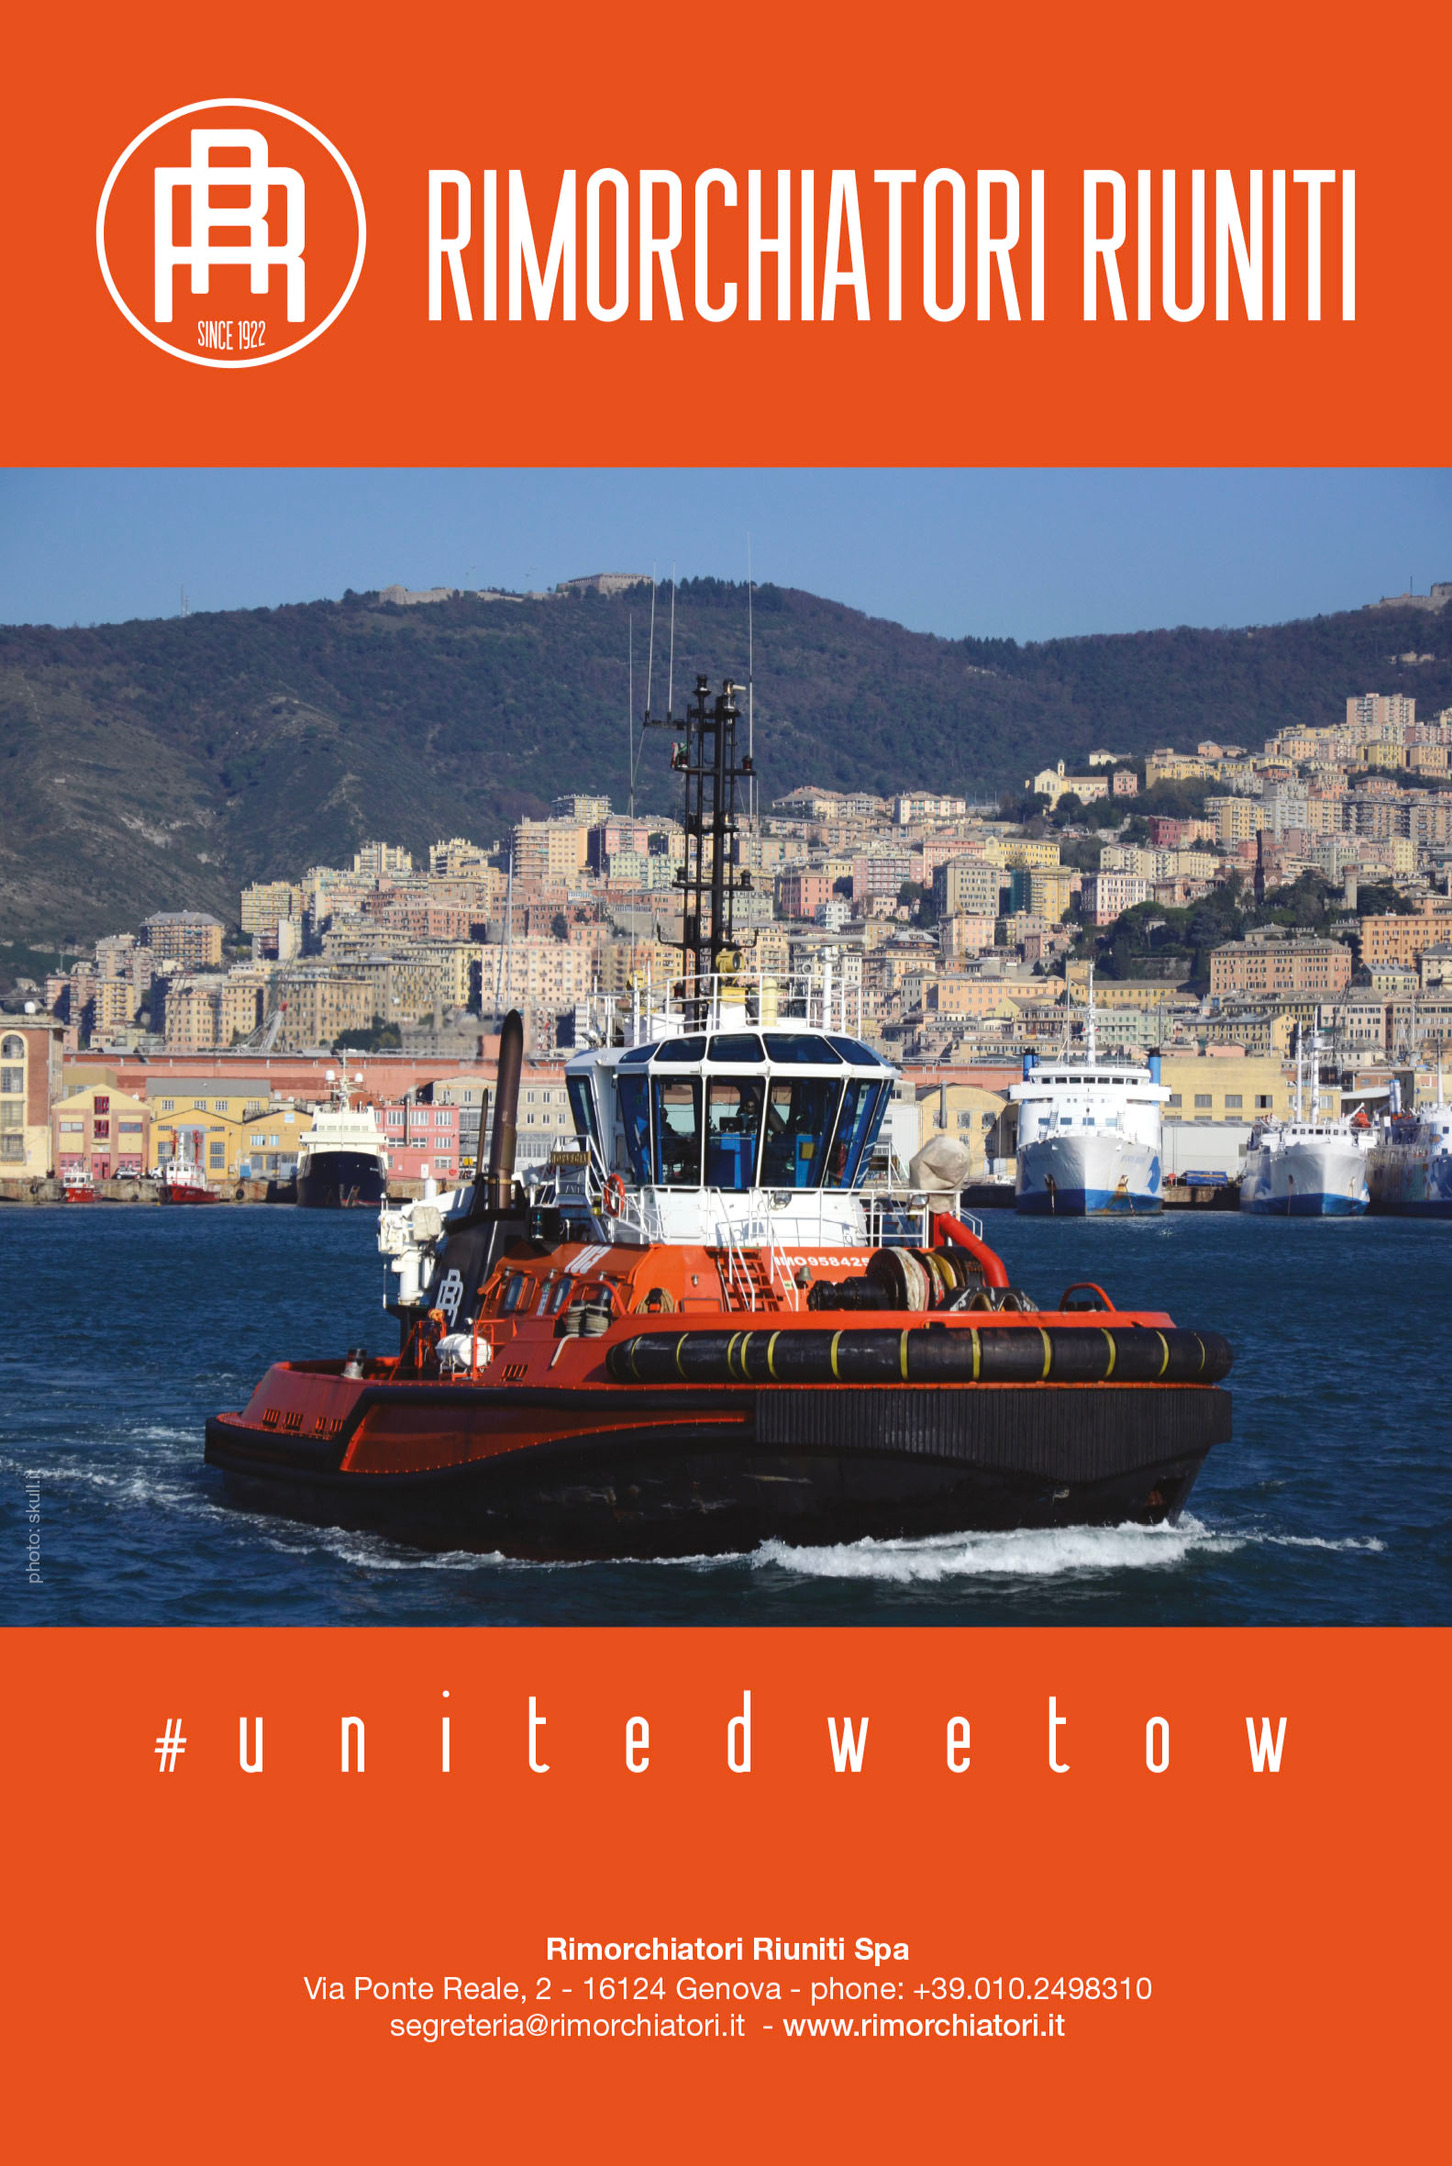 Rimorchiatori Riuniti è il player principale del Mediterraneo per il servizio del rimorchio portuale